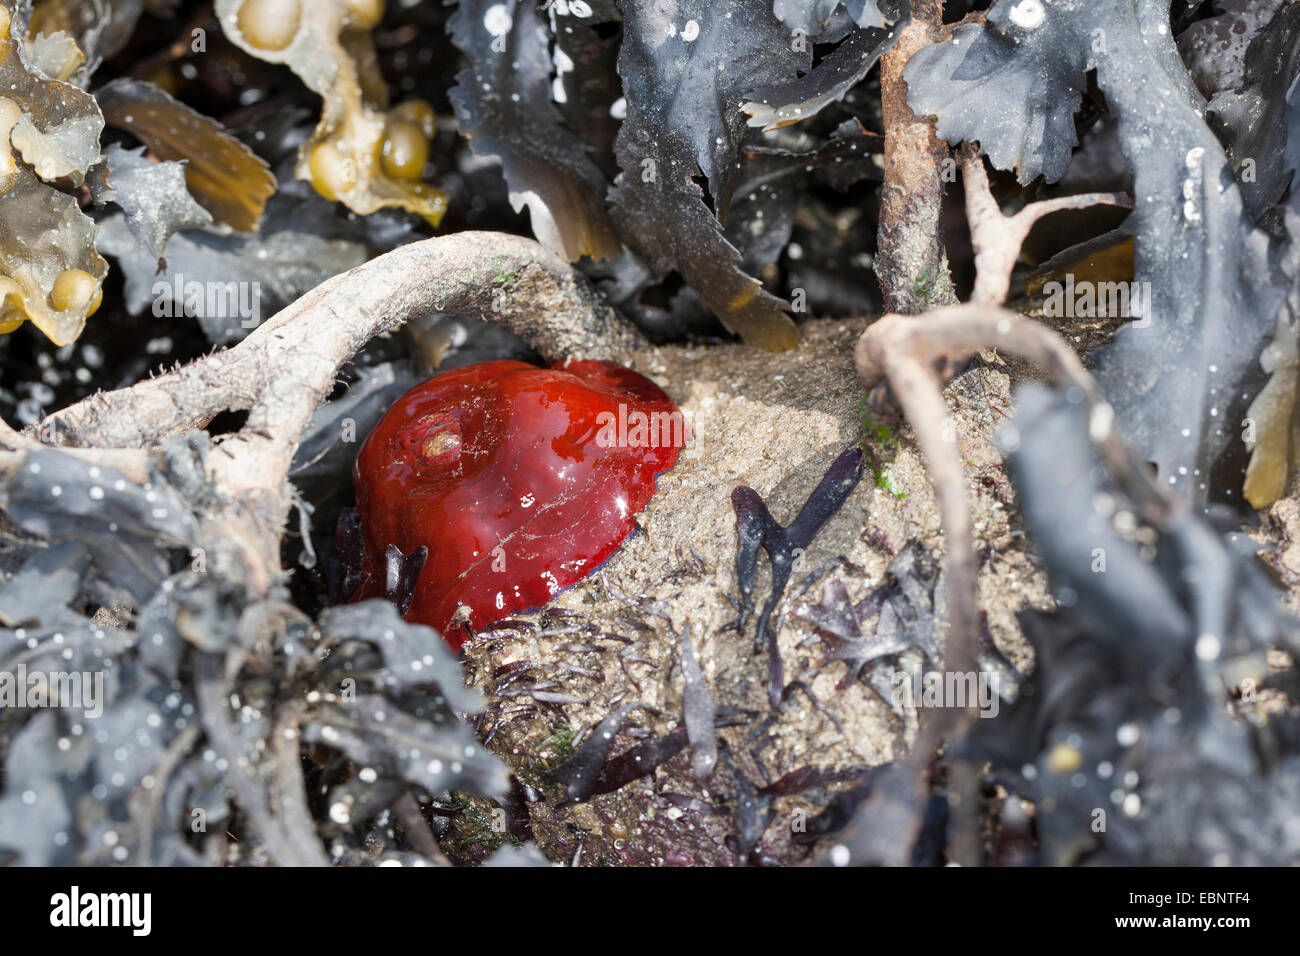 Mikrokügelchen Anemone, rote Seeanemone, Pflaume Anemone, Mikrokügelchen-Anemone (Actinia Equina), fühlte sich trocken an den niedrigen Gezeiten, Deutschland Stockfoto